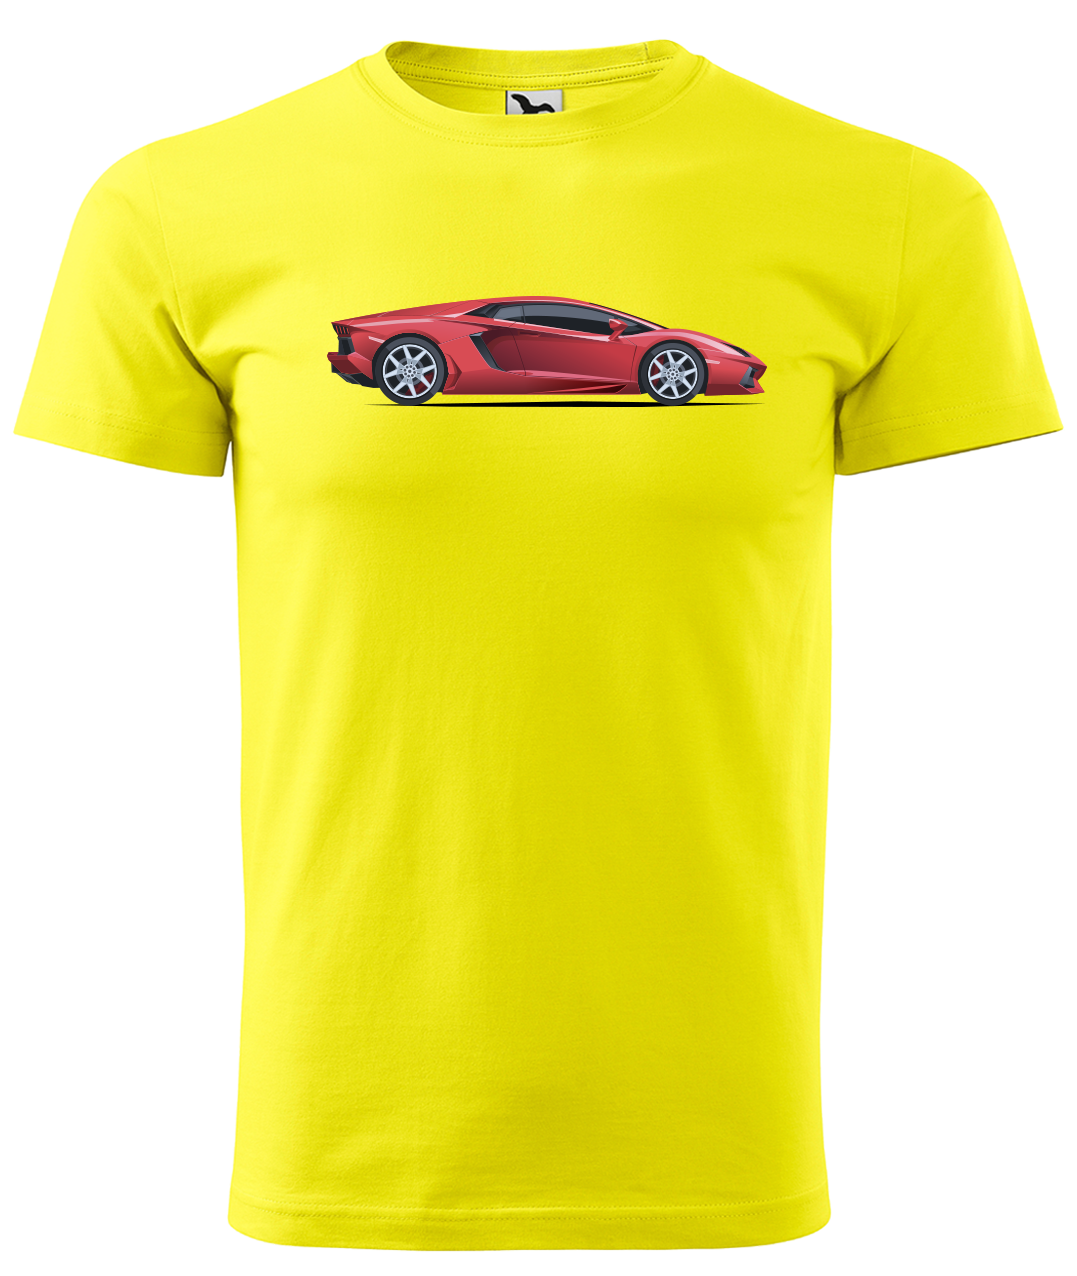 Dětské tričko s autem - Červený sporťák Velikost: 6 let / 122 cm, Barva: Žlutá (04)